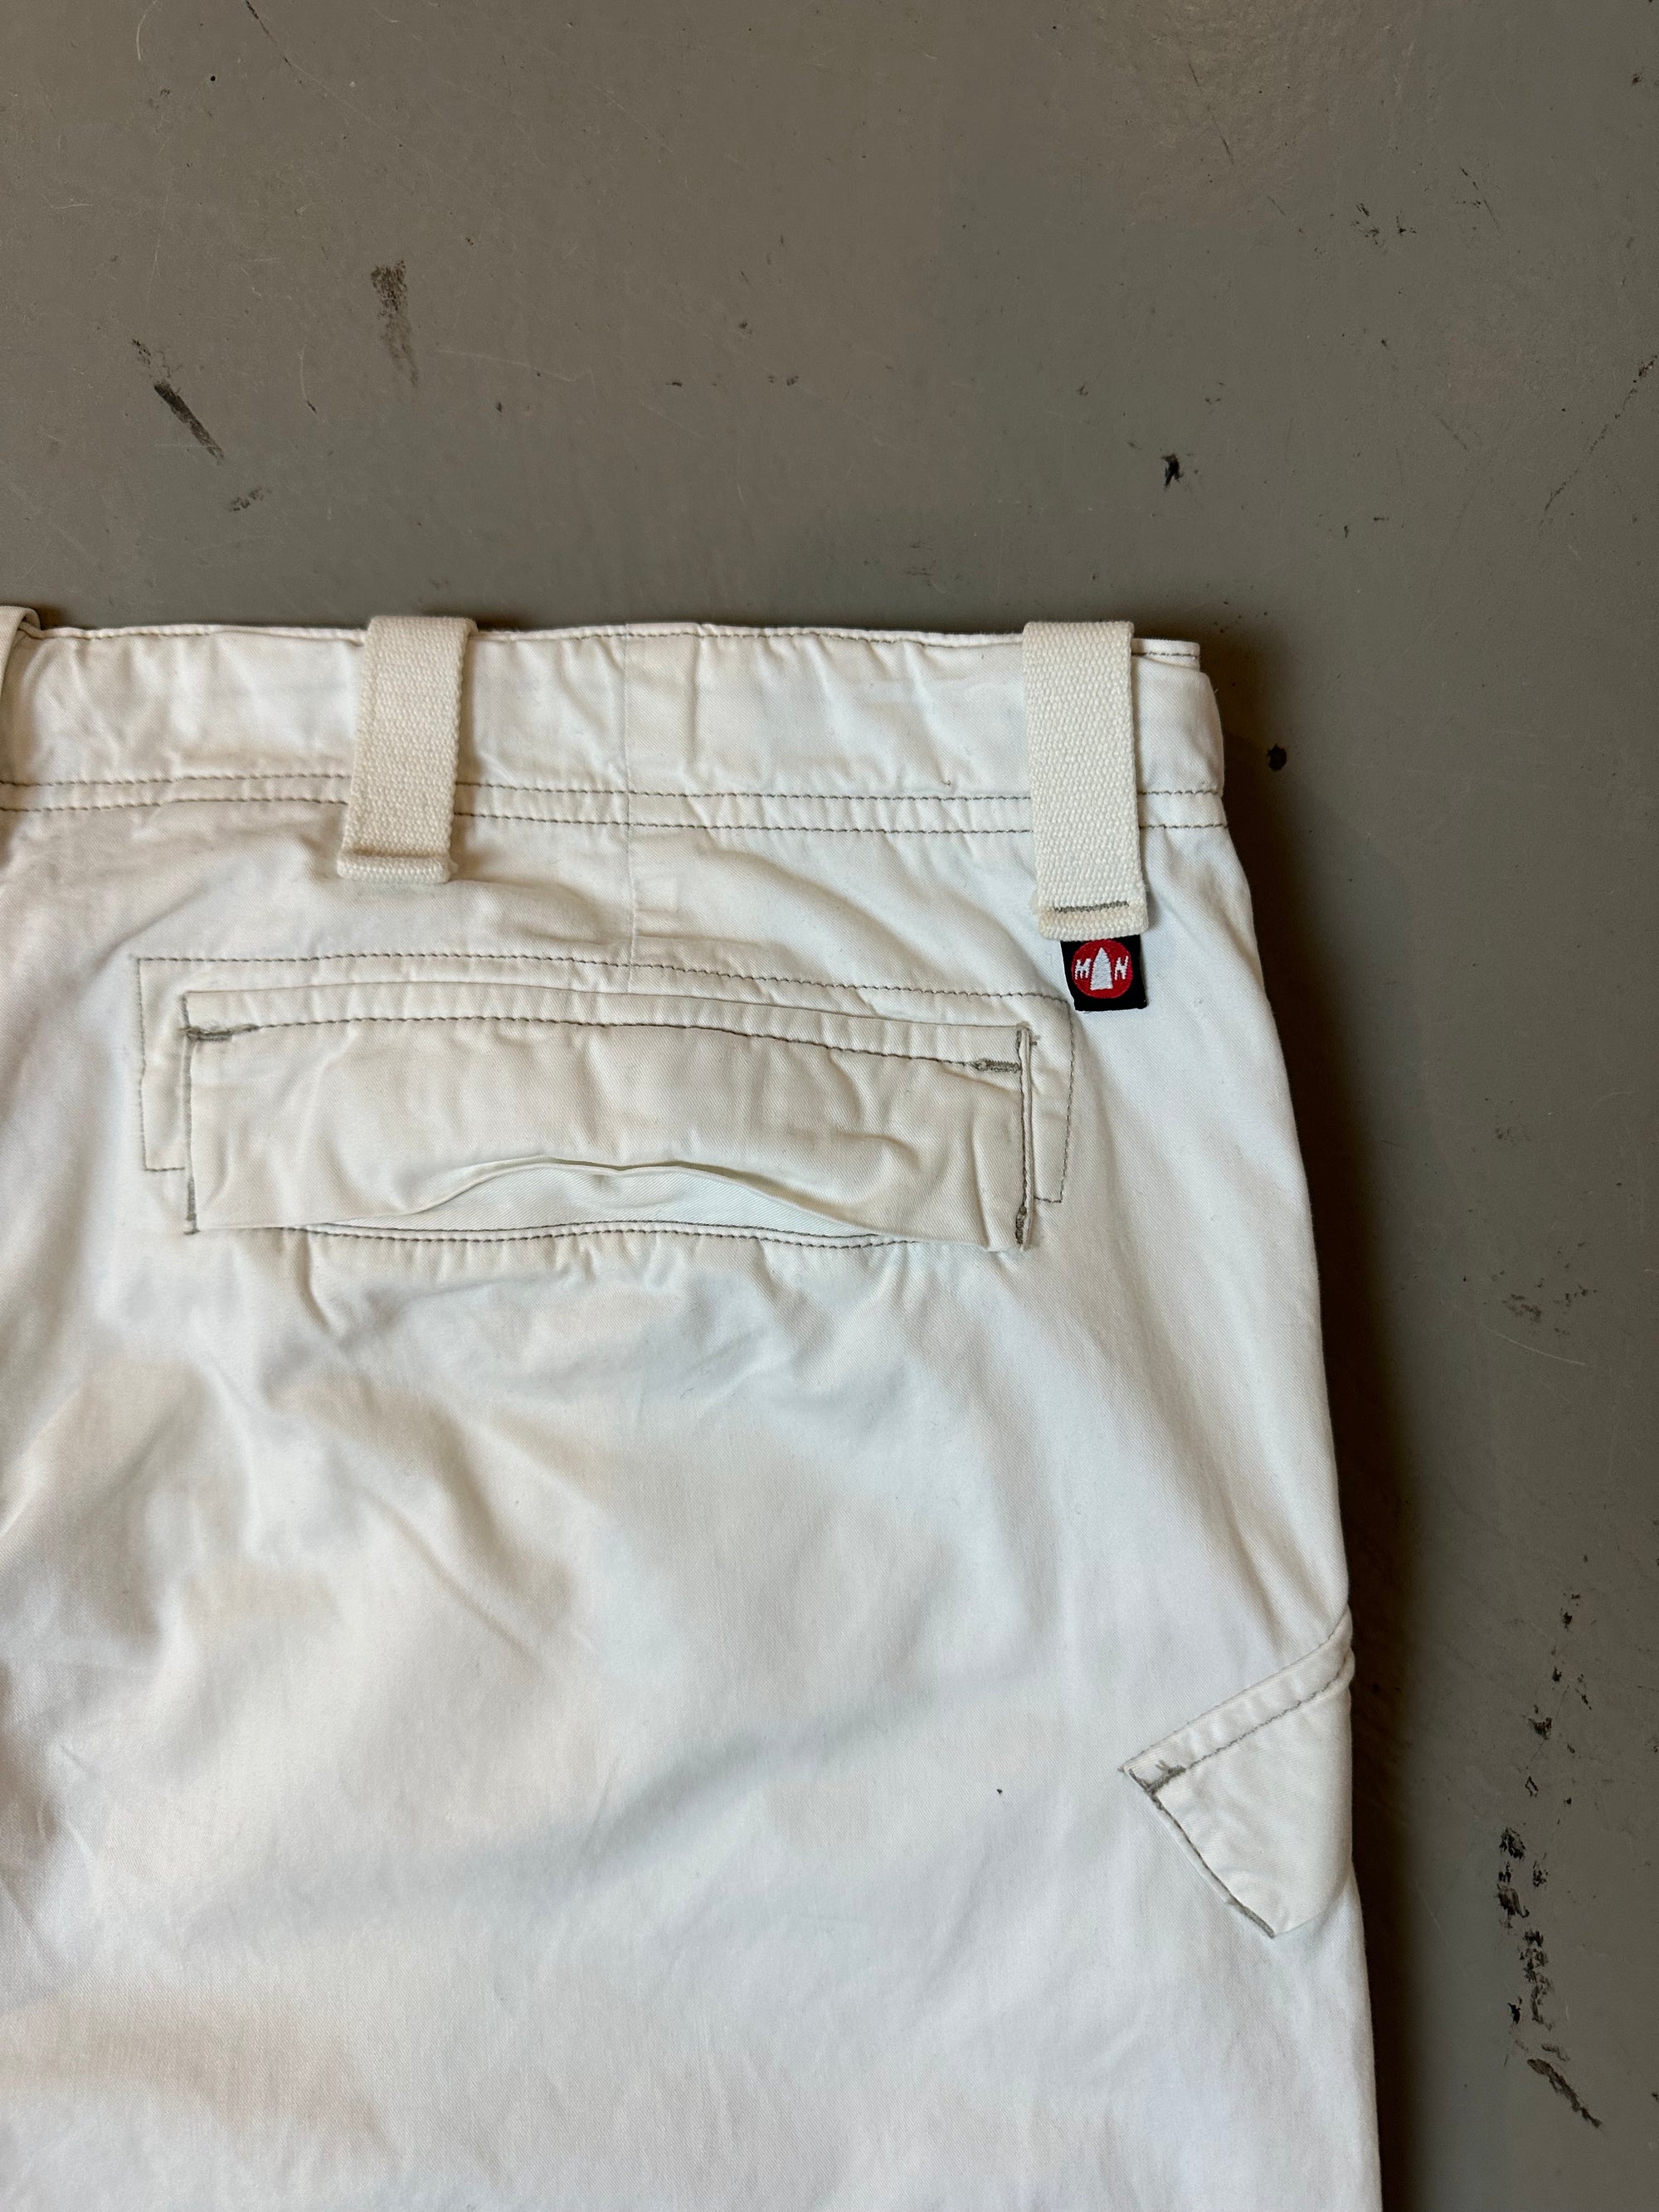 Vintage White Summer Pants L/XL